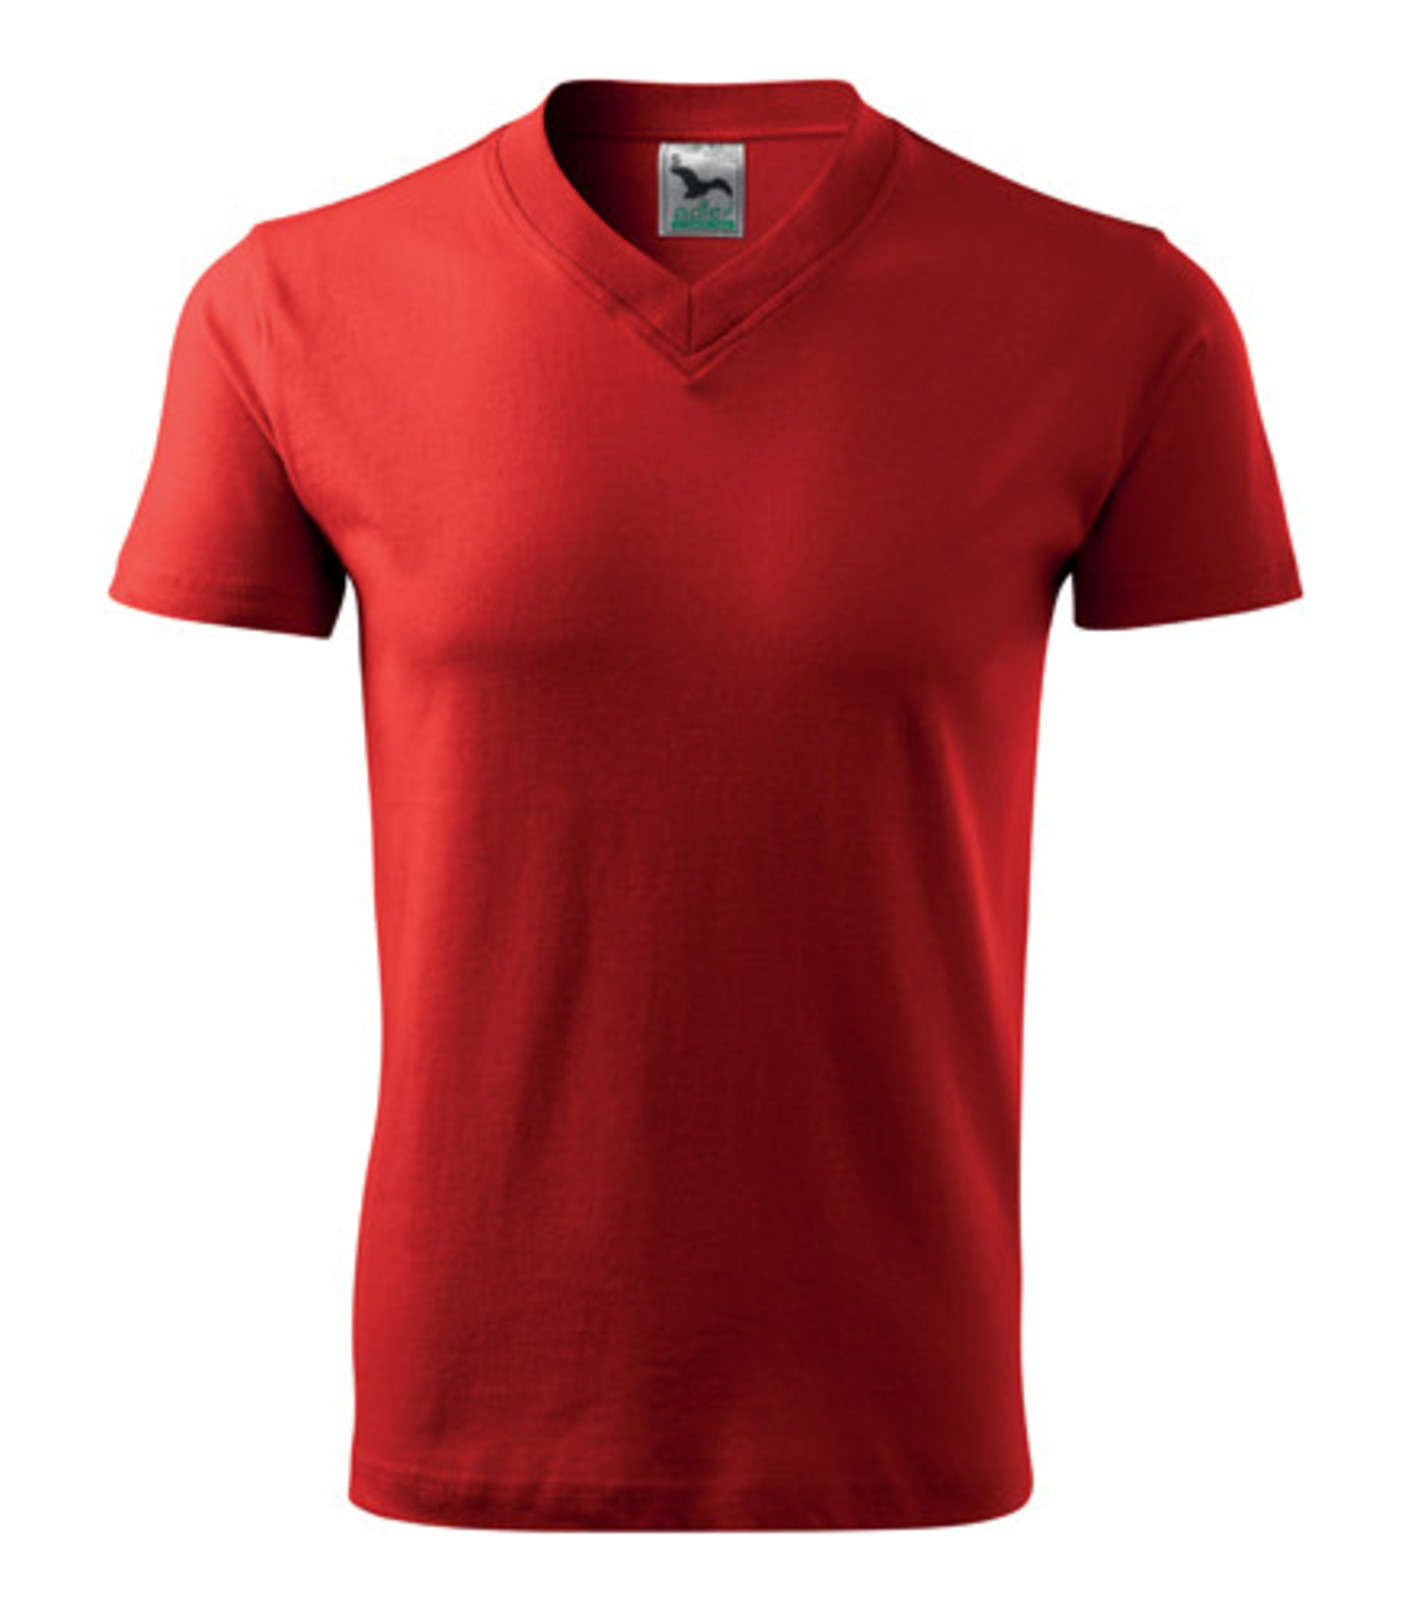 Unisex tričko s výstrihom Adler V-Neck 102 - veľkosť: XXL, farba: červená